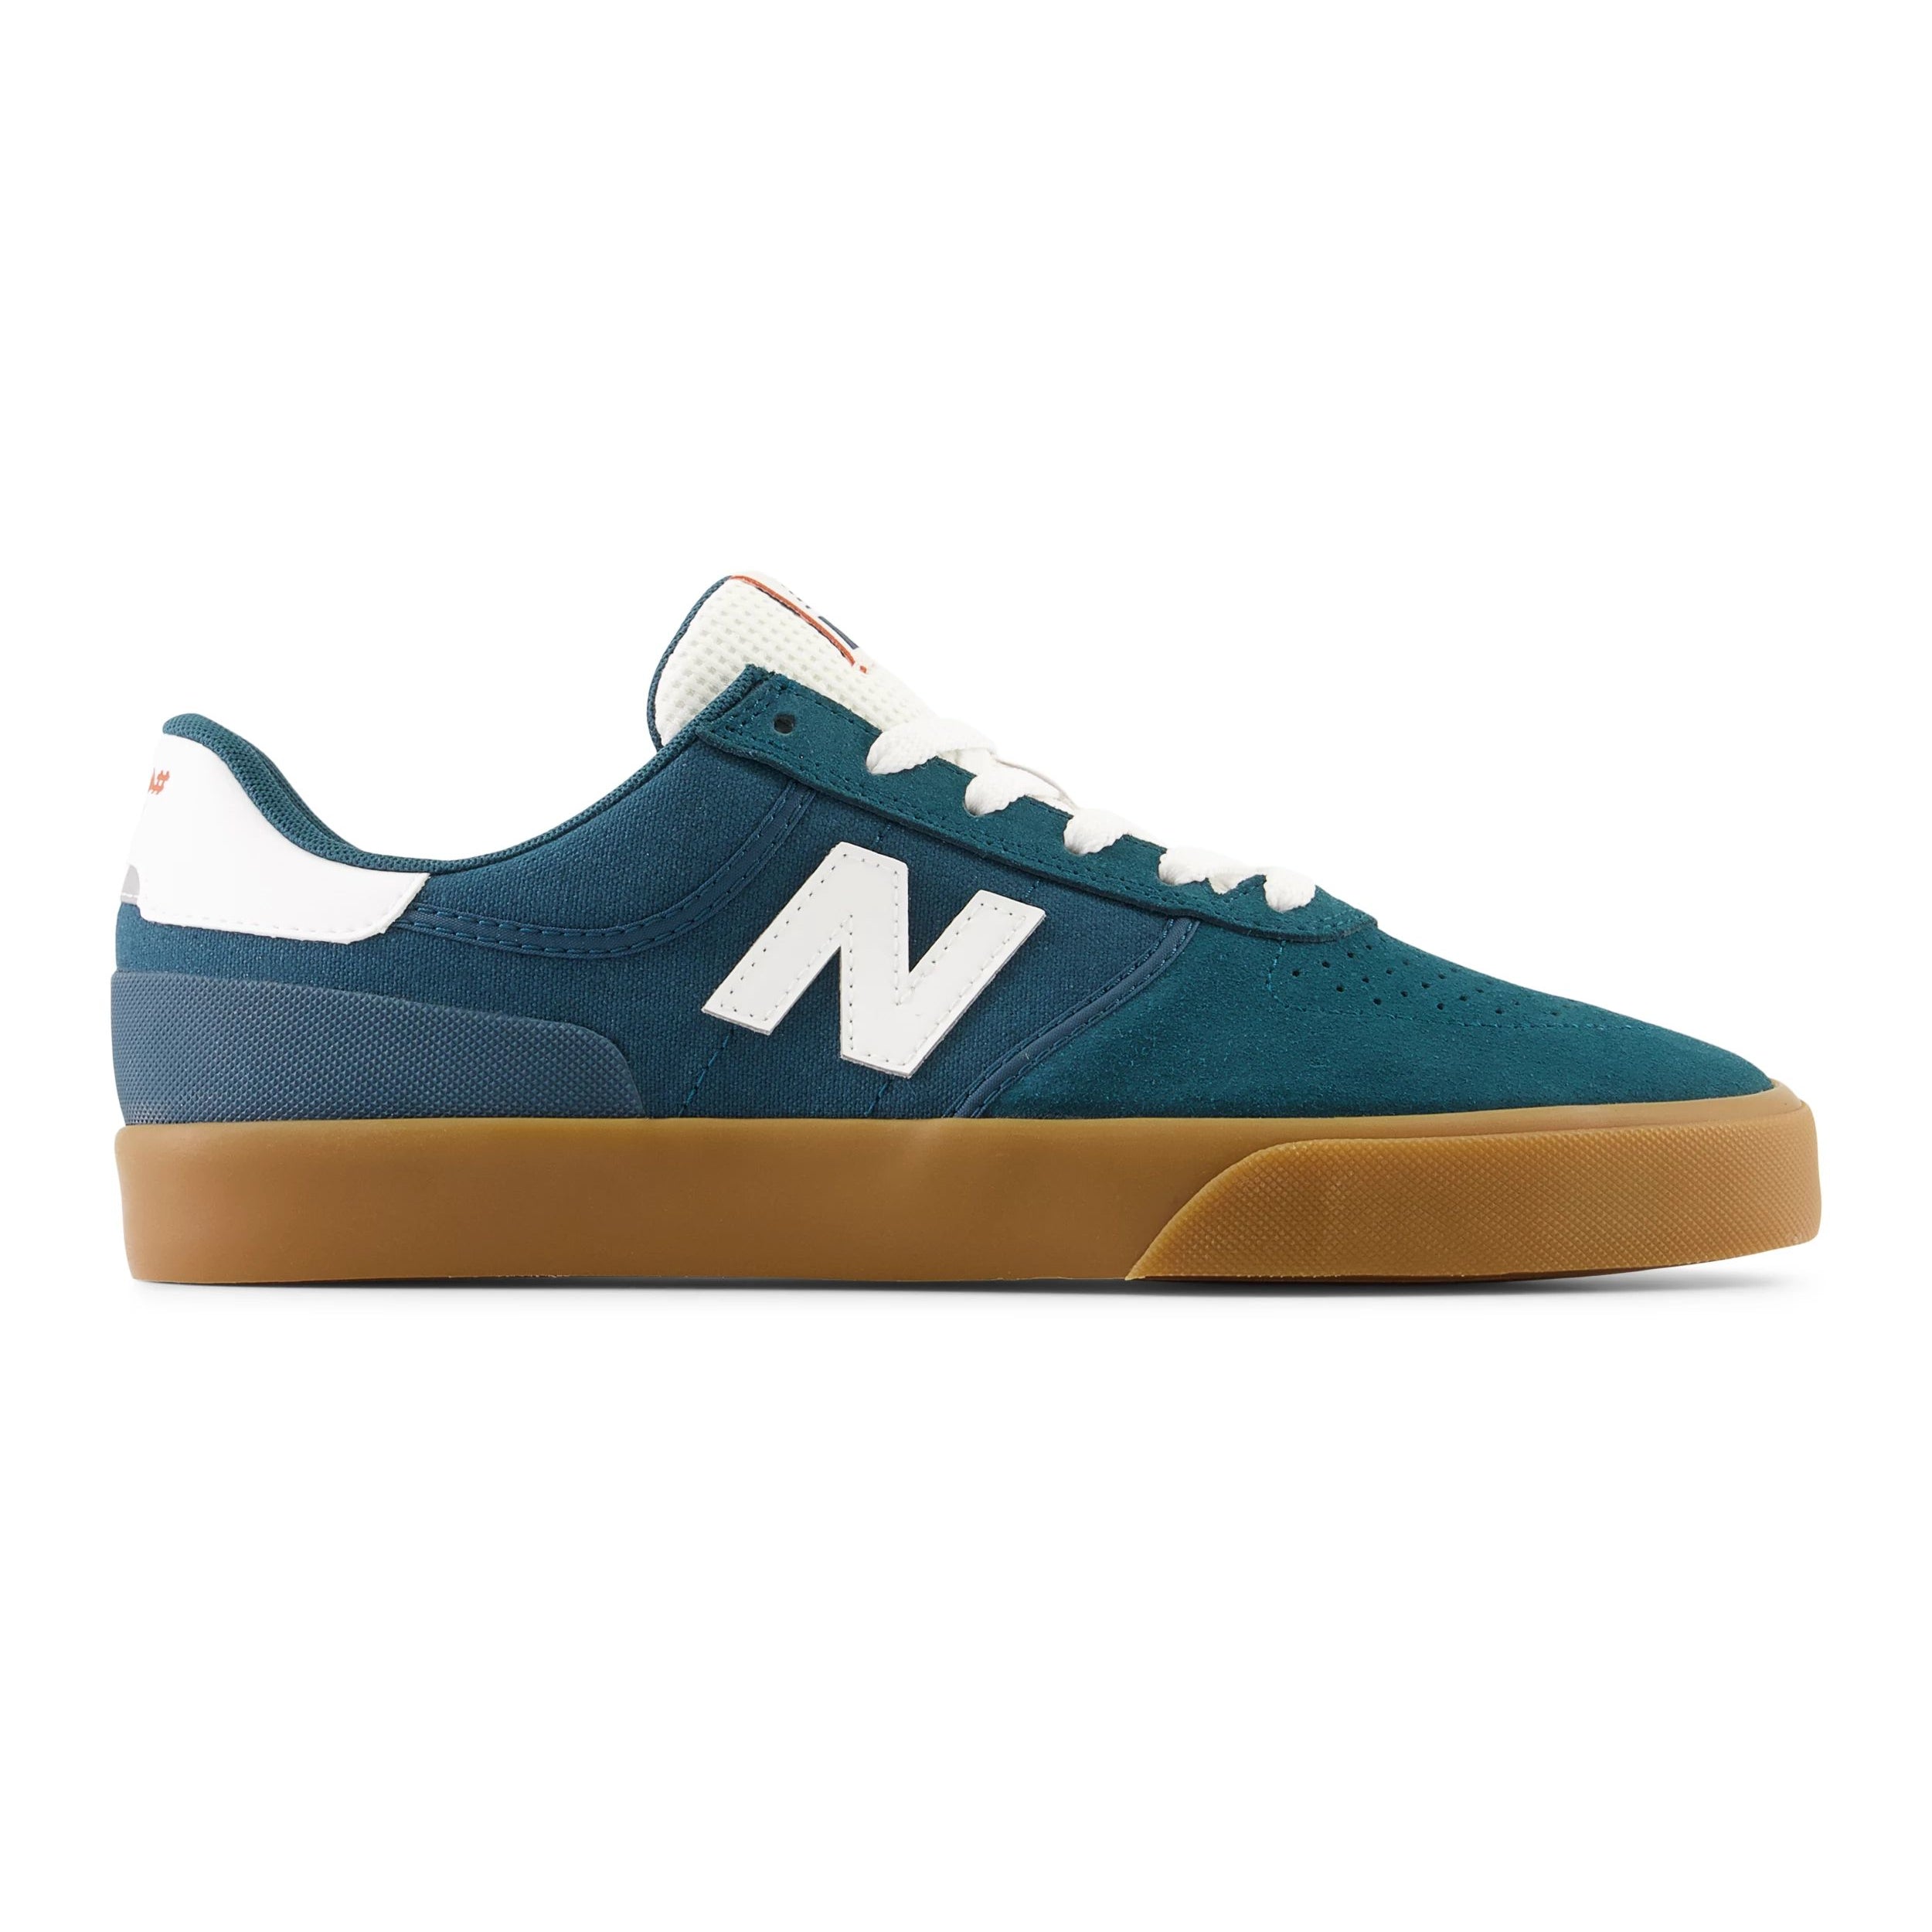 Vintage Teal NM272 NB Numeric Skate Shoe